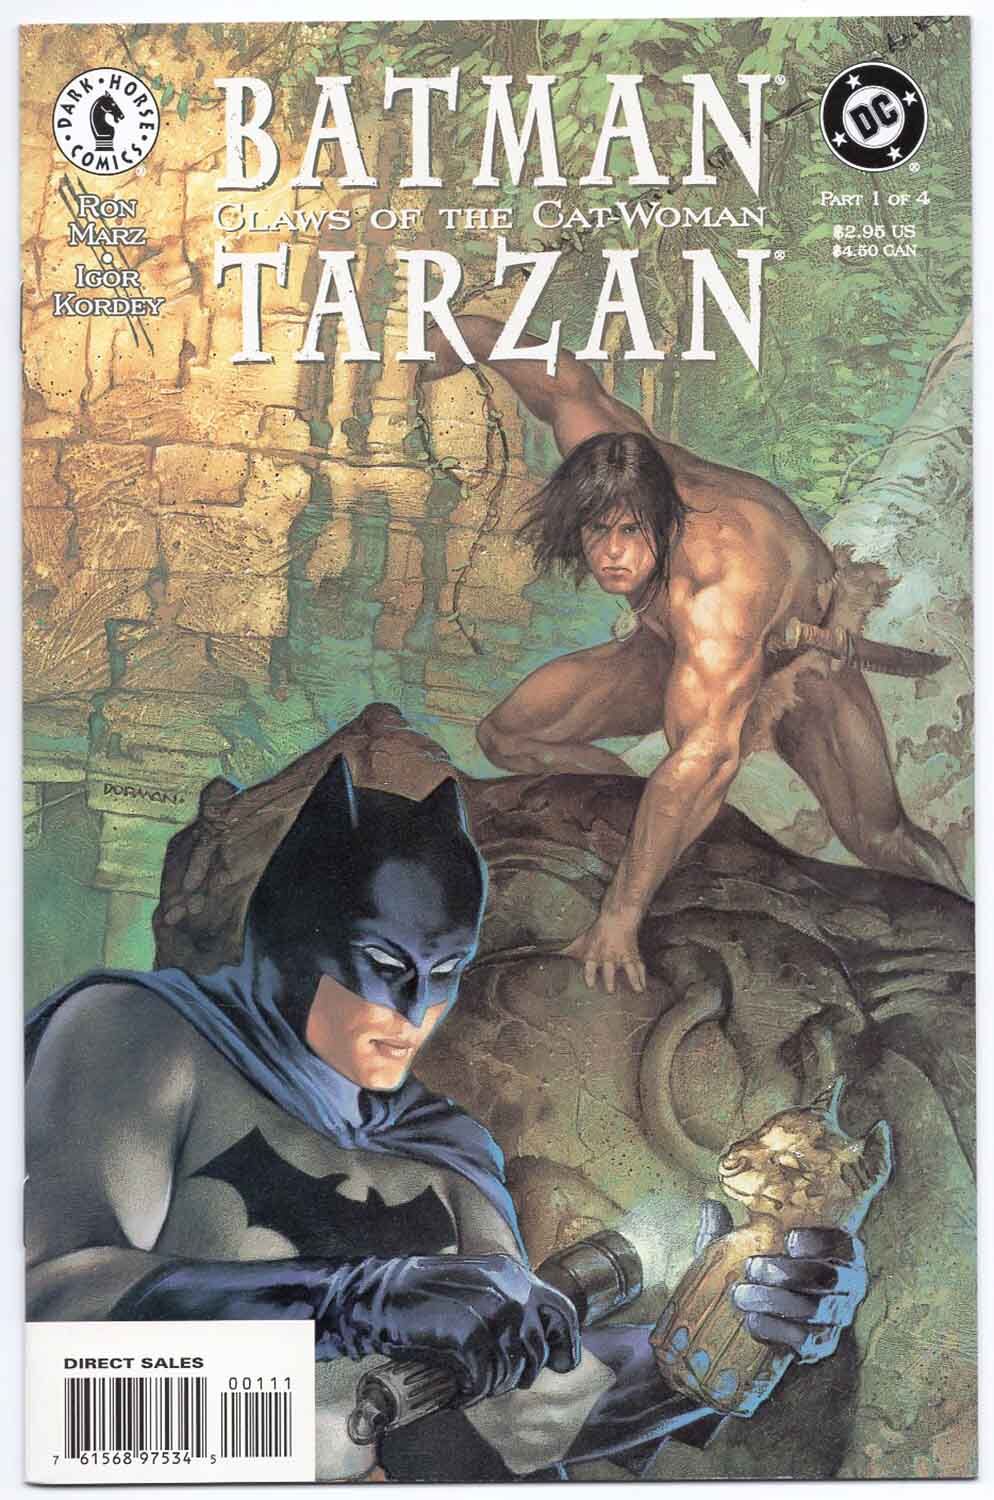 Batman/Tarzan Claws of the Cat-Woman #1